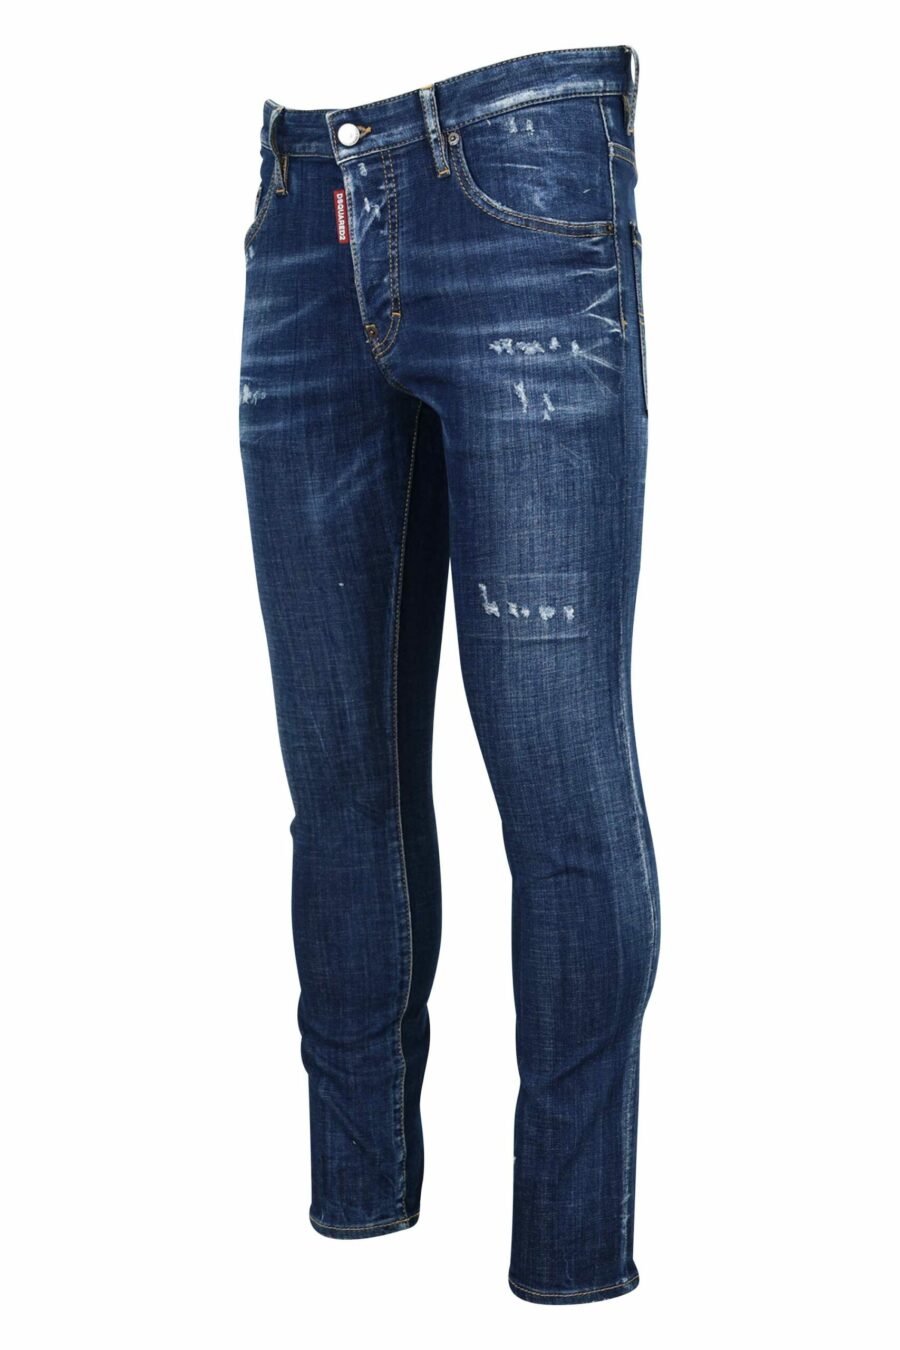 Semi-getragene blaue "Skater-Jeans" - 8054148101503 1 skaliert